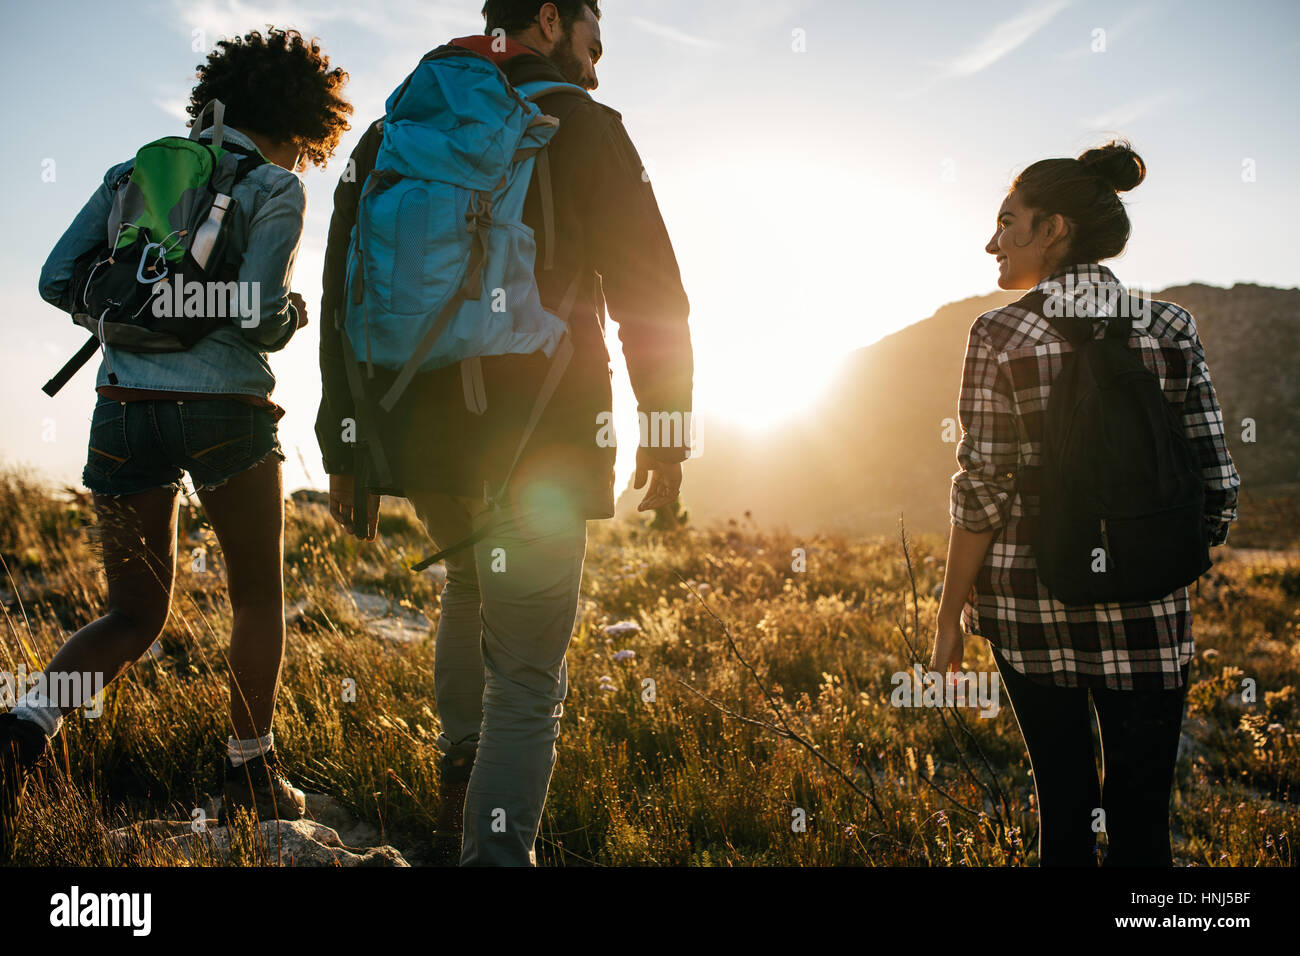 Vue arrière photo de jeunes amis dans la campagne pendant des vacances randonnée. Groupe de randonneurs marchant dans la nature. Banque D'Images